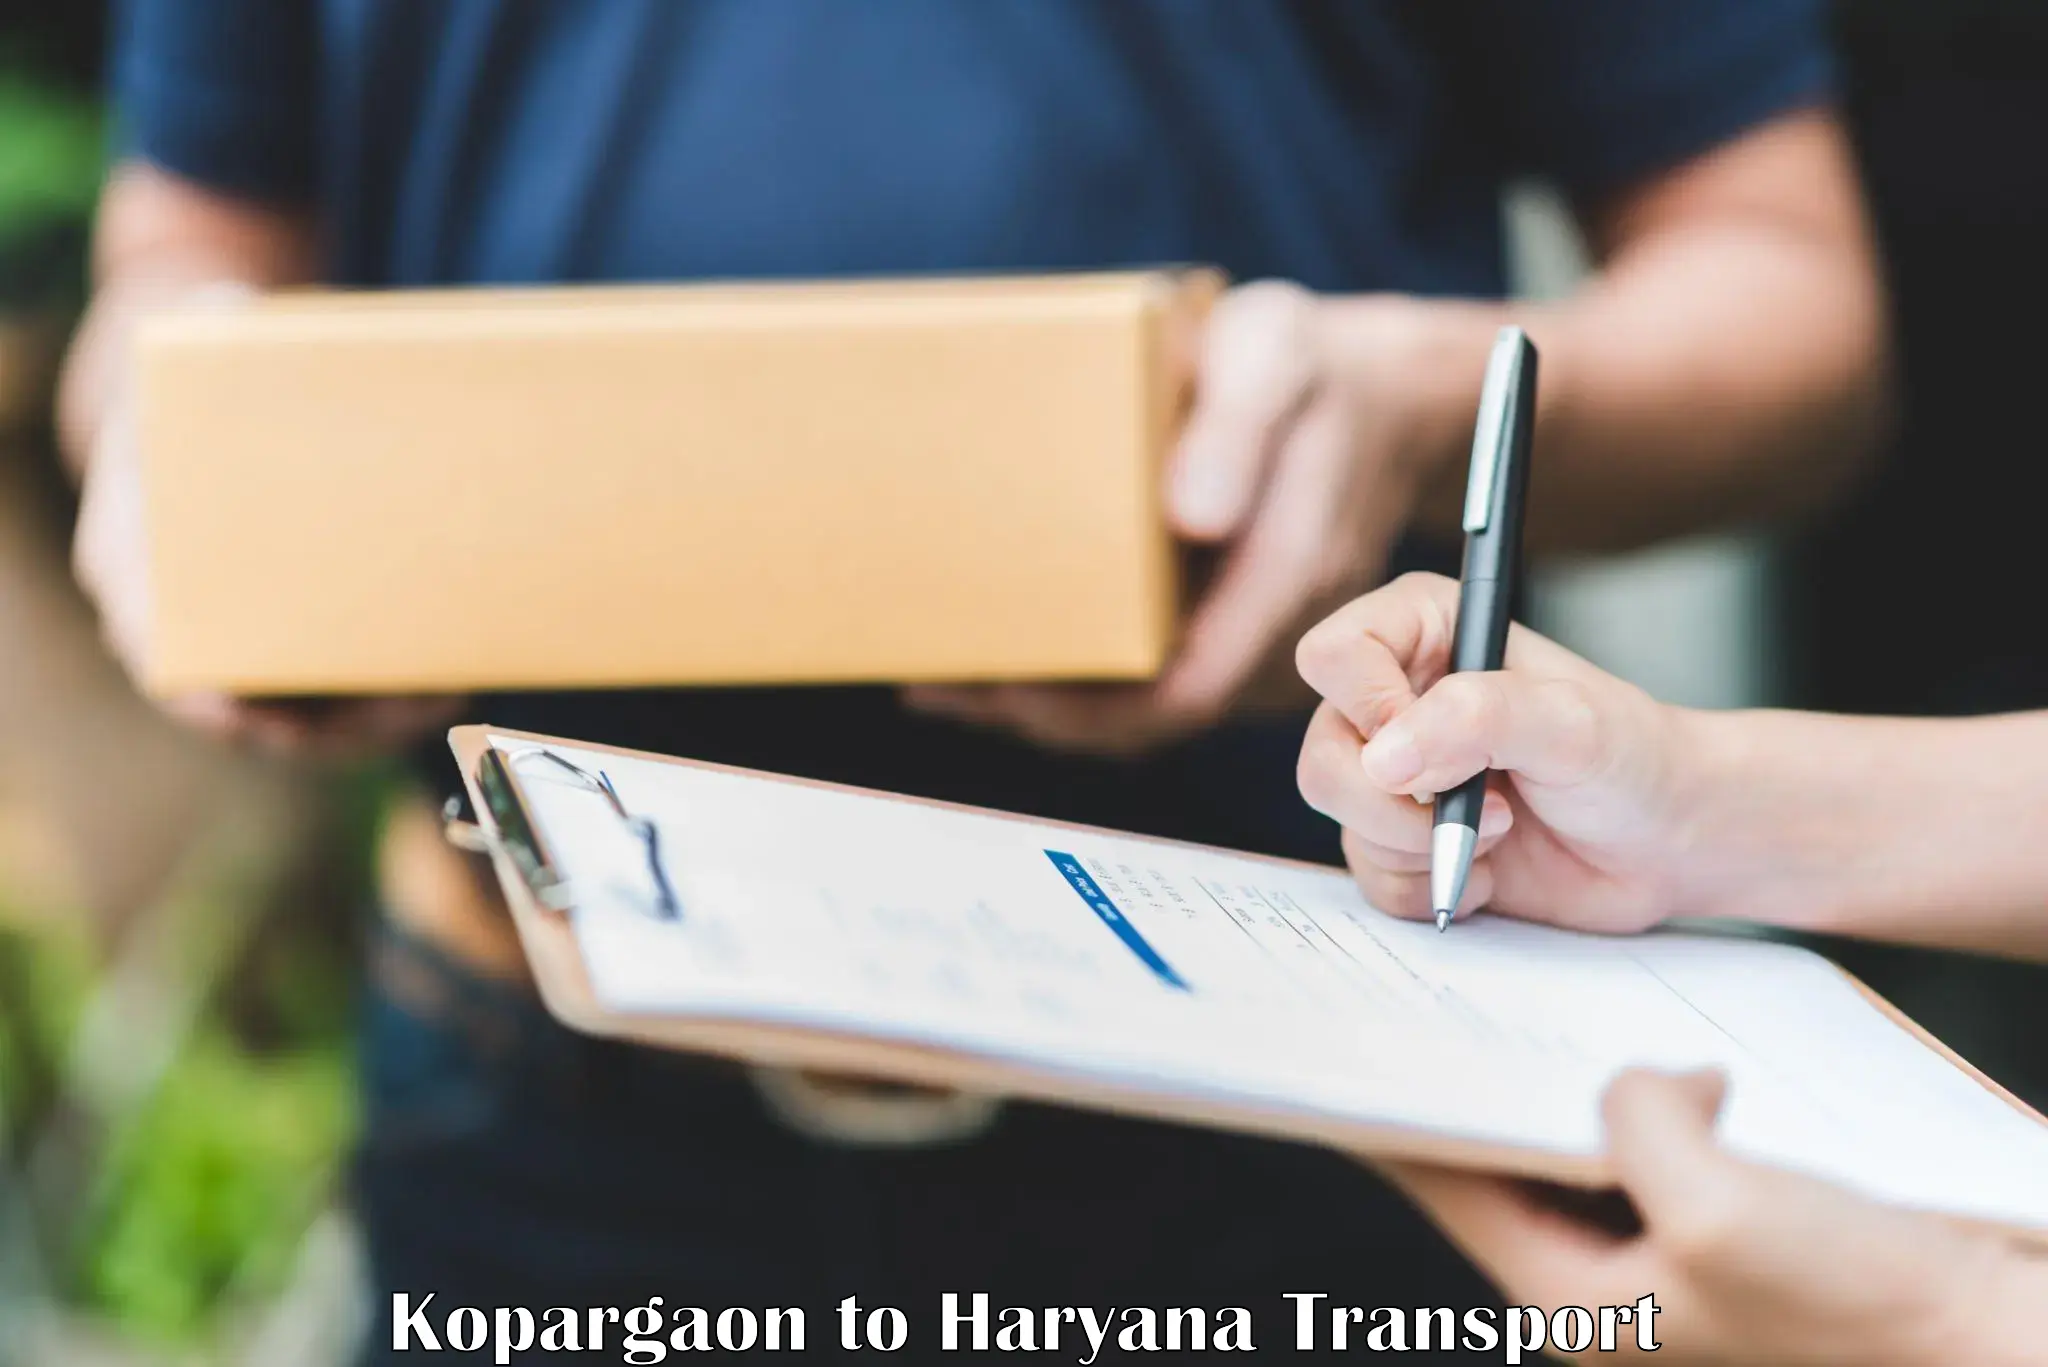 Furniture transport service Kopargaon to Gurugram